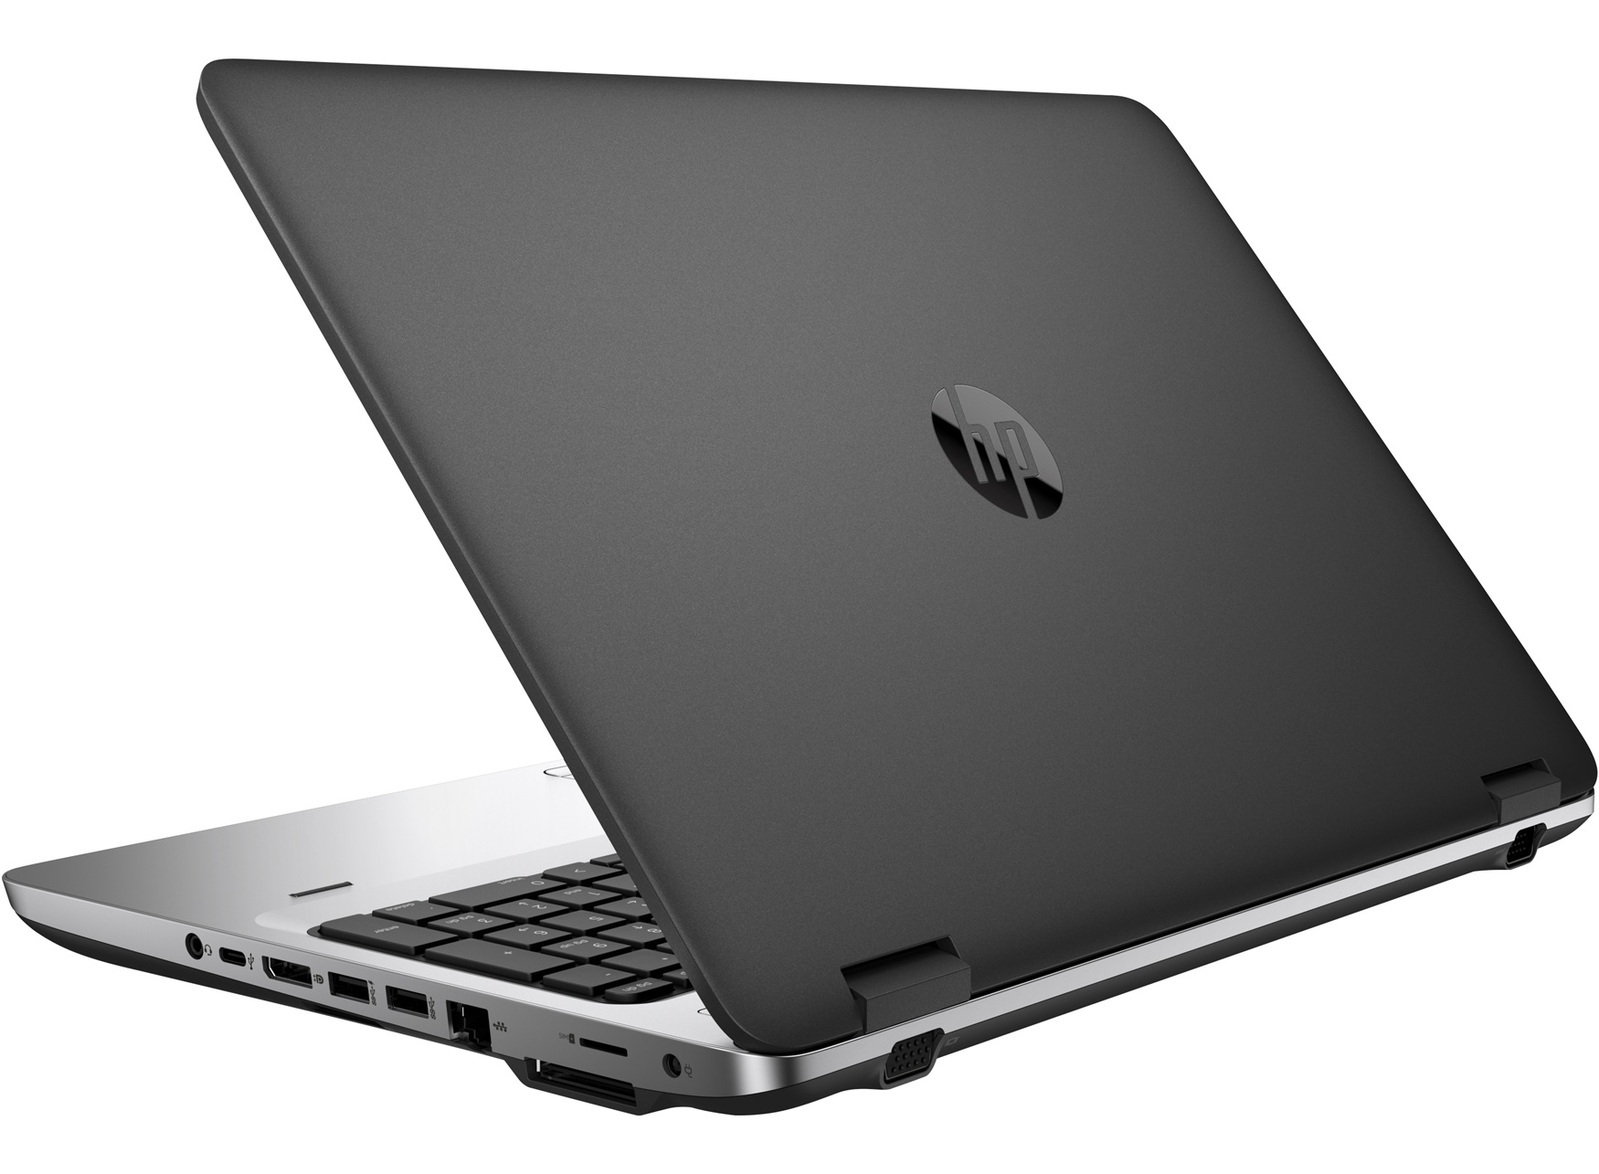 HP ProBook 650 G2 Intel i5 6200U 2.30GHz 8GB RAM 250GB SSD 15.6" Win 10 - B Grade Image 2